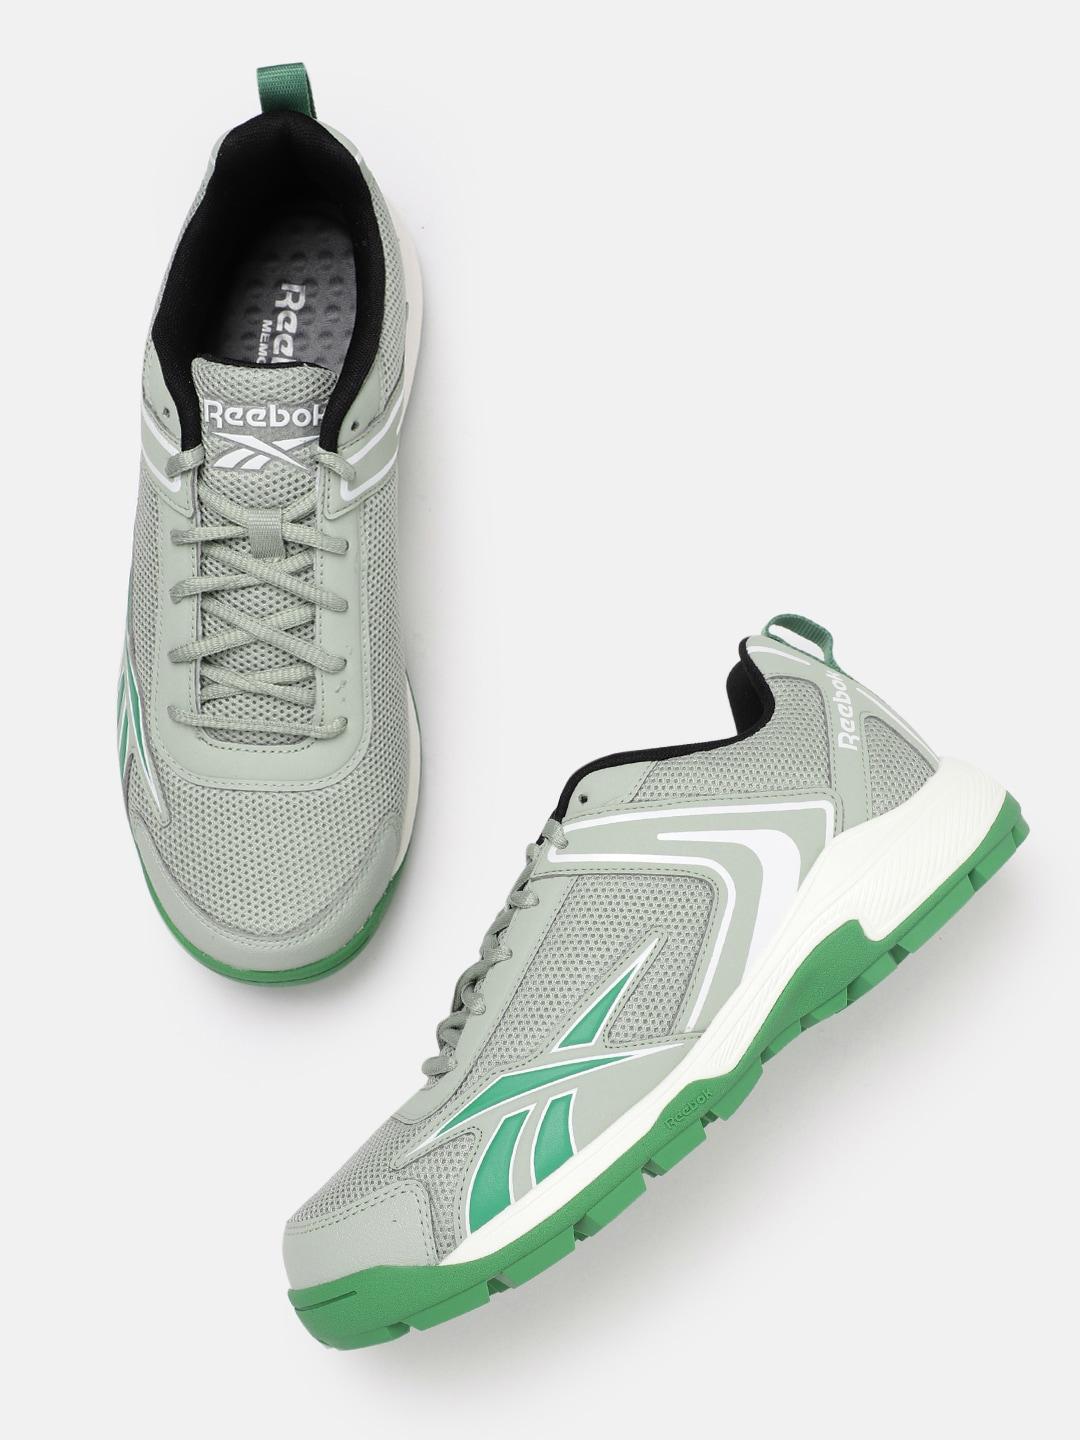 Reebok Men Woven Design Power Play Running Shoes